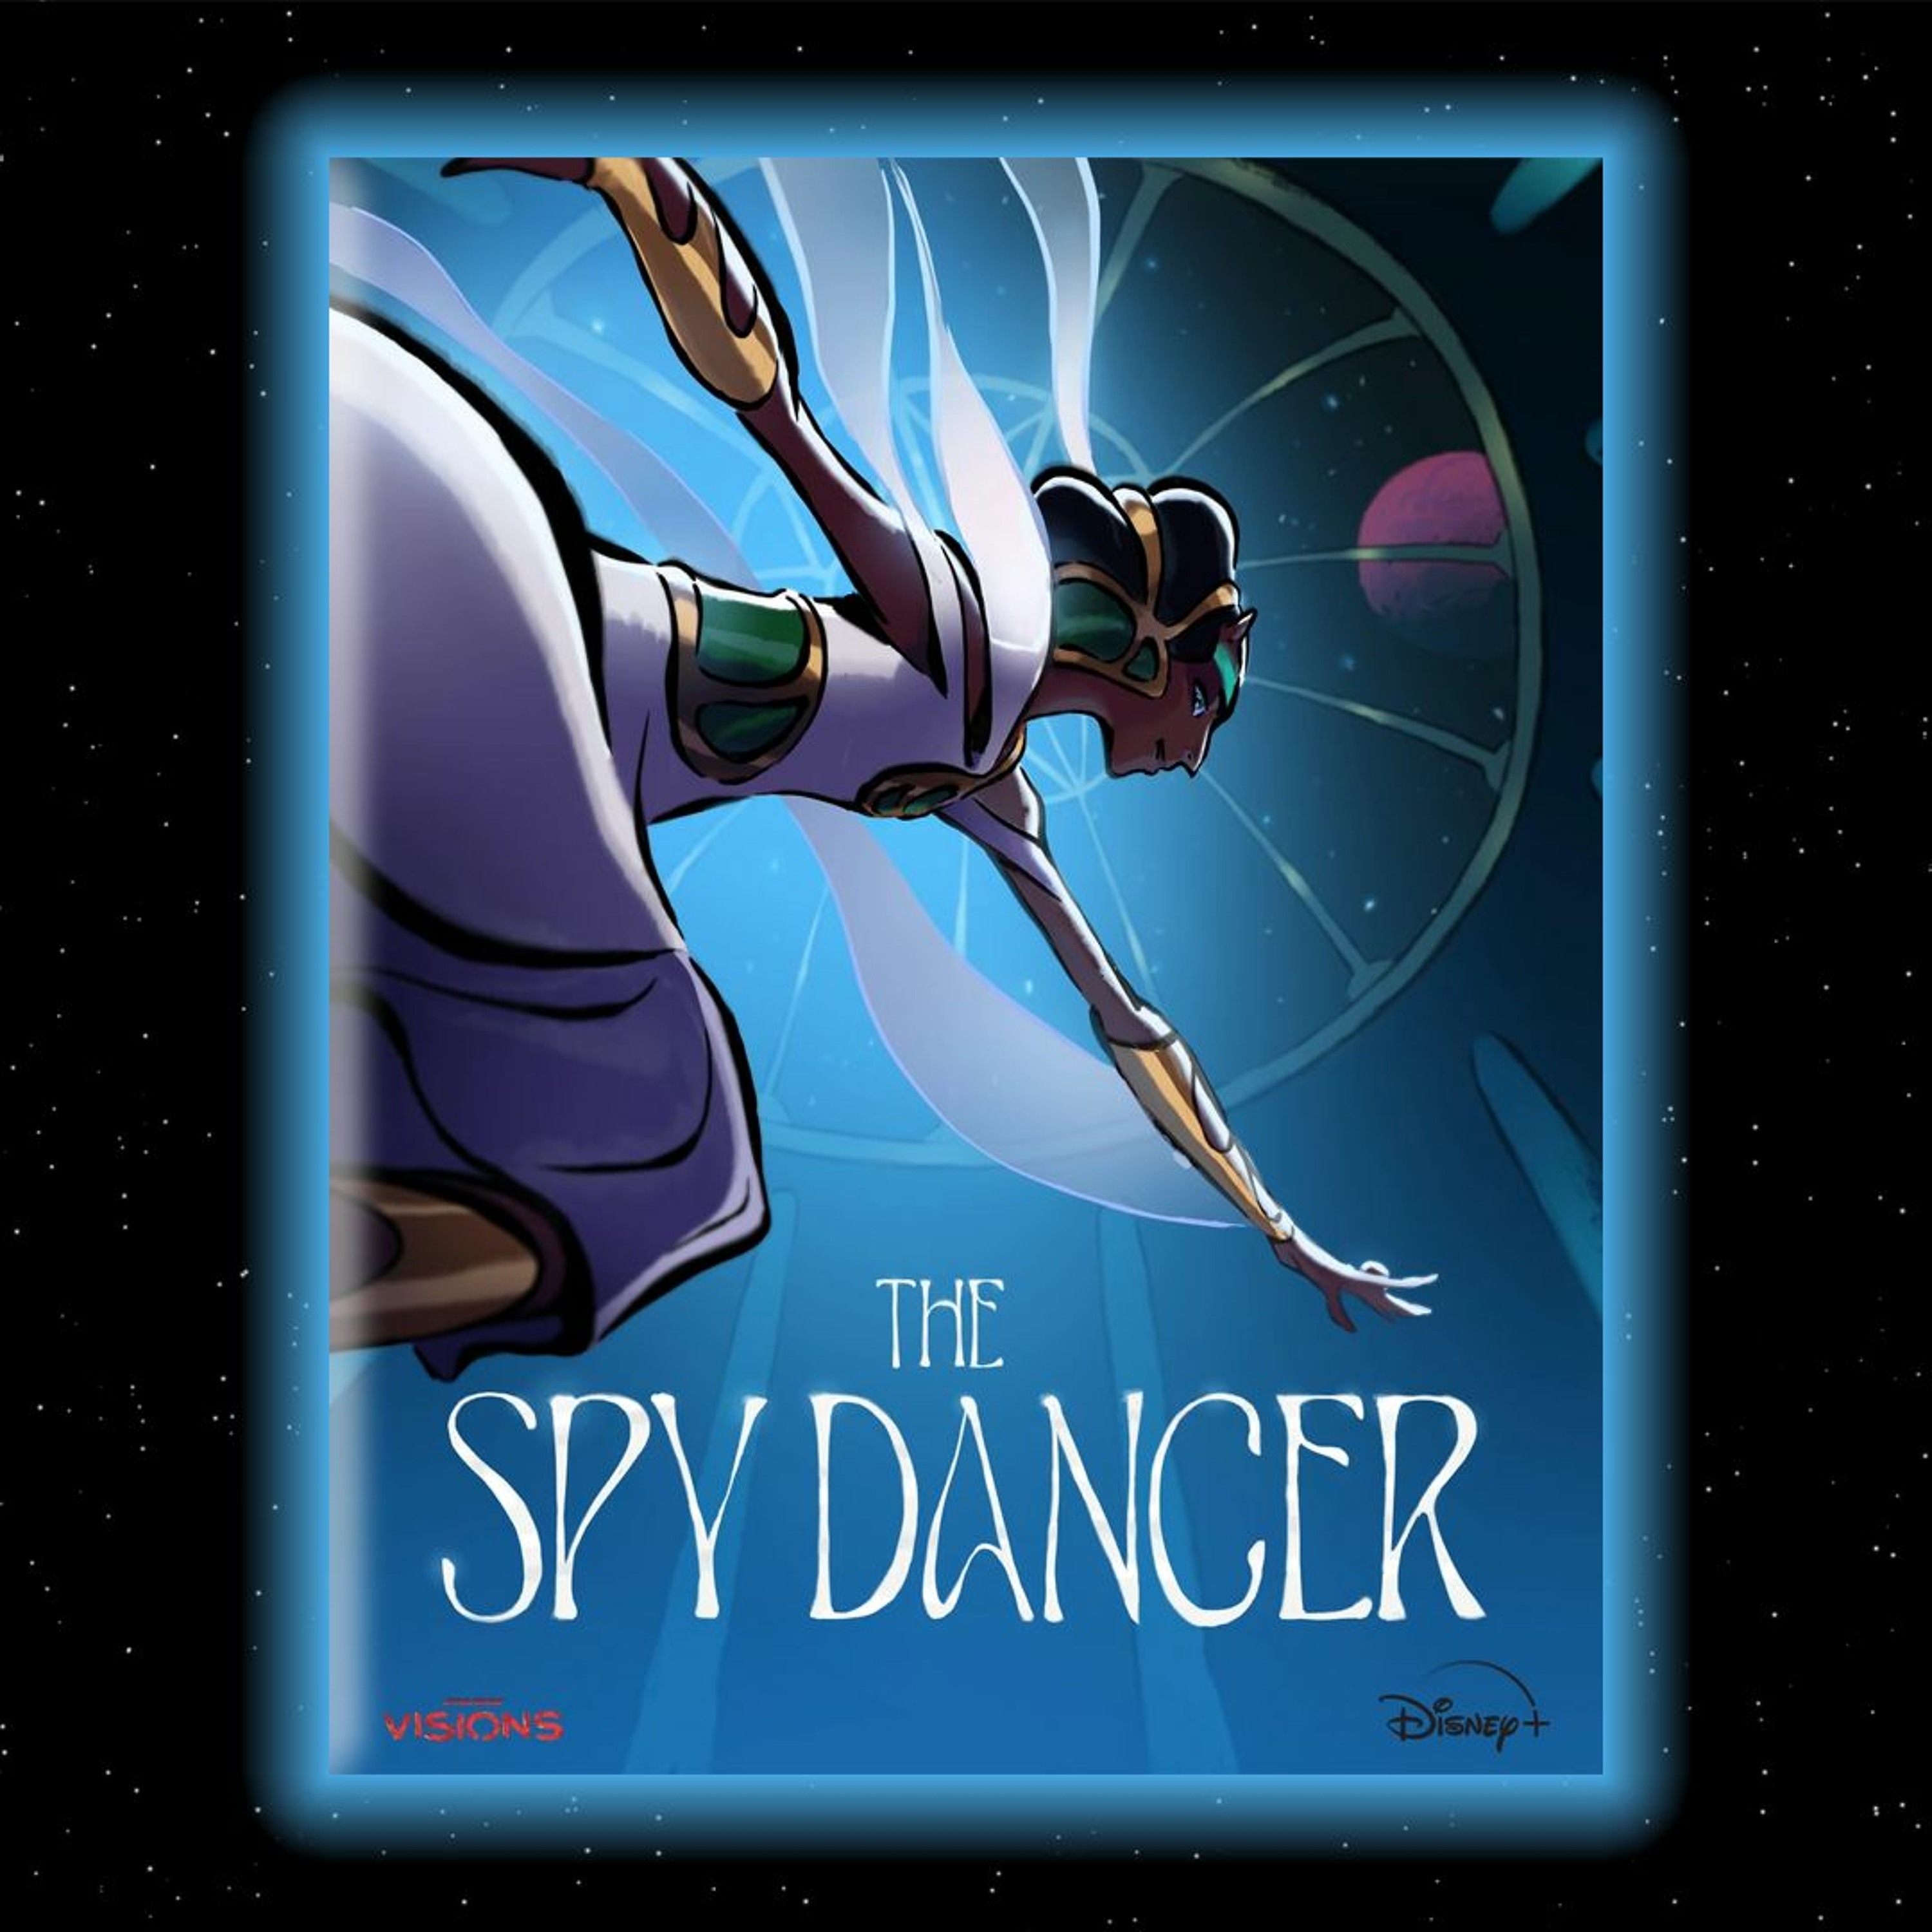 Visions S2E6: The Spy Dancer by Studio La Cachette